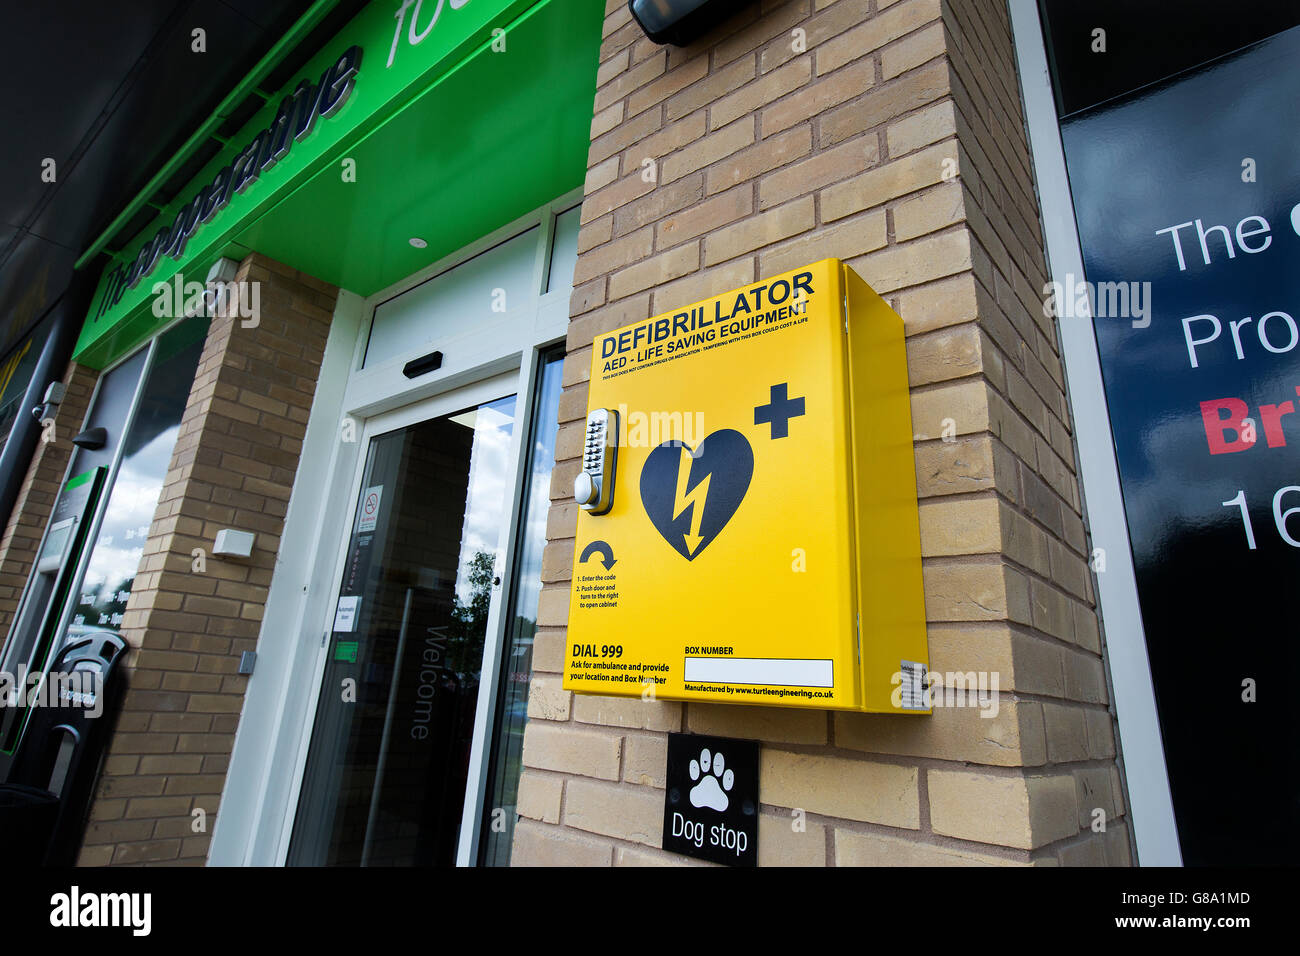 Medizinische Defibrillator außerhalb einer Genossenschaft Lebensmittelgeschäft in Nottingham, UK Stockfoto